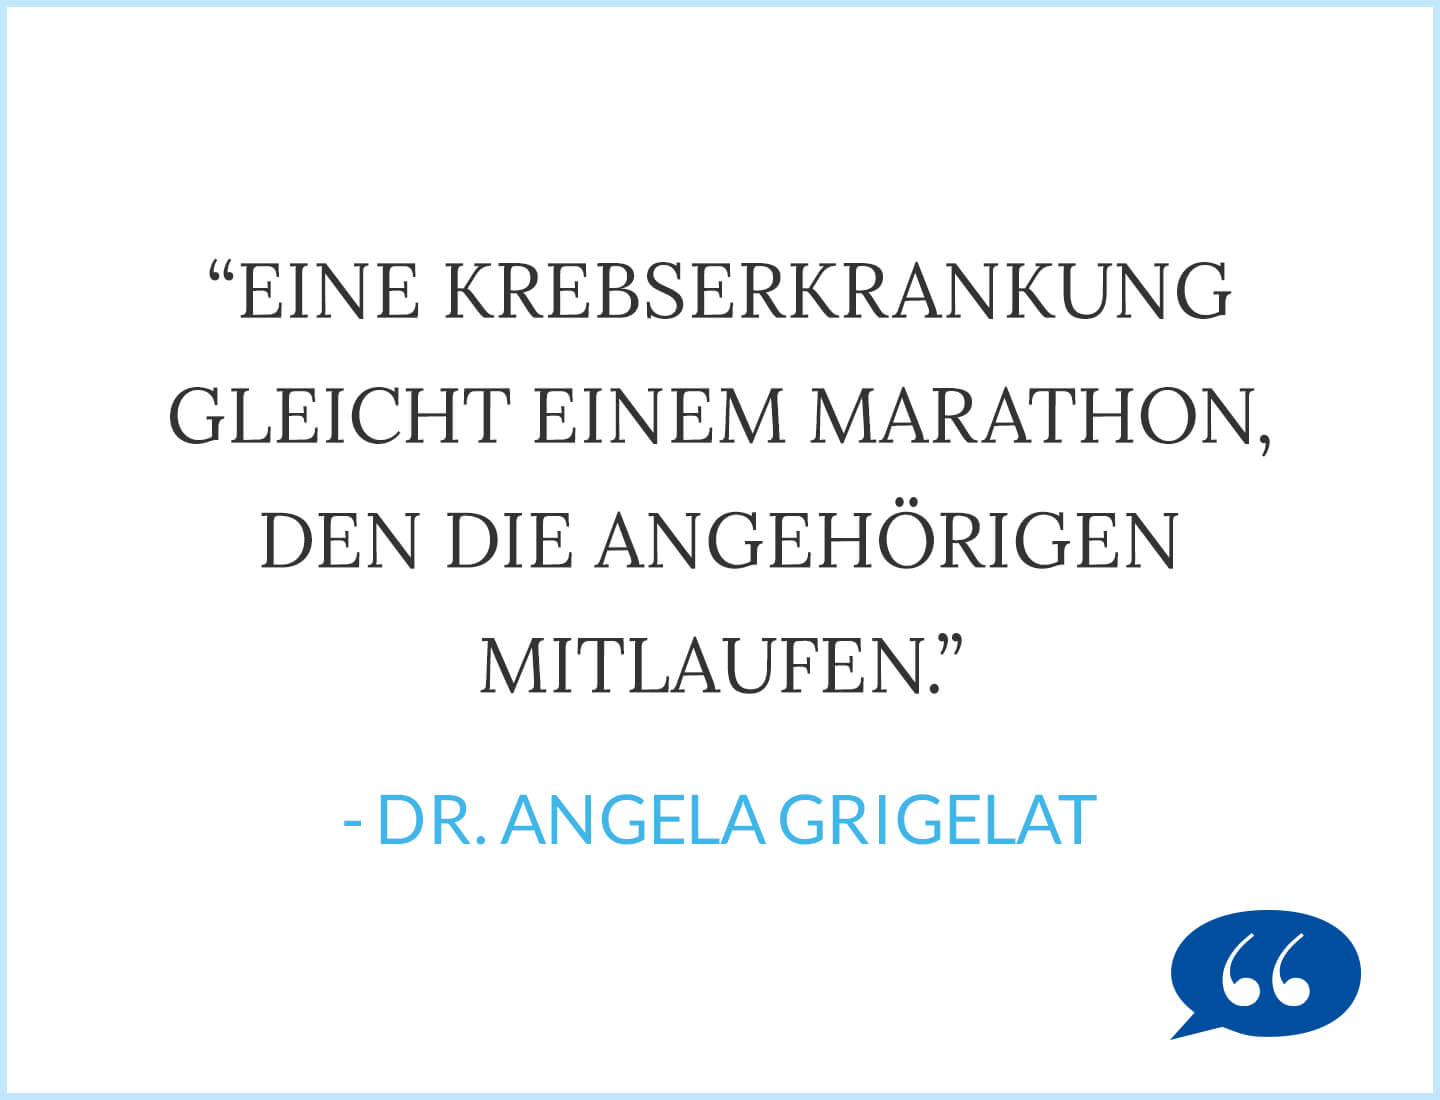 Diagnose Krebs: Eine Krebserkrankung gleicht einem Marathon, den die Angehörigen mitlaufen. - Dr. Angela Grigelat